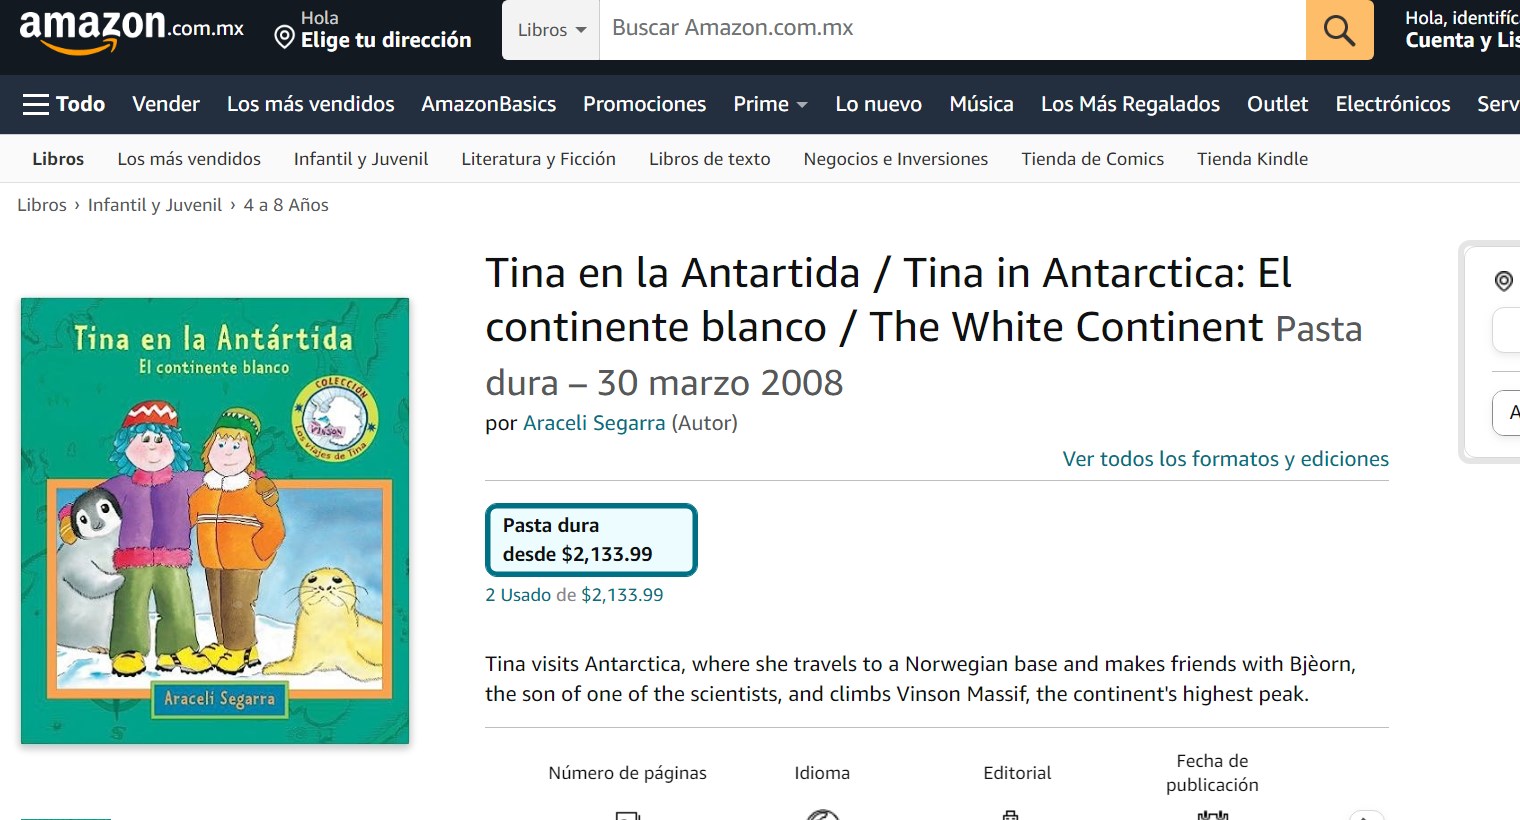 Libro: Tina en la Antártida, el continente blanco por Araceli Segarra